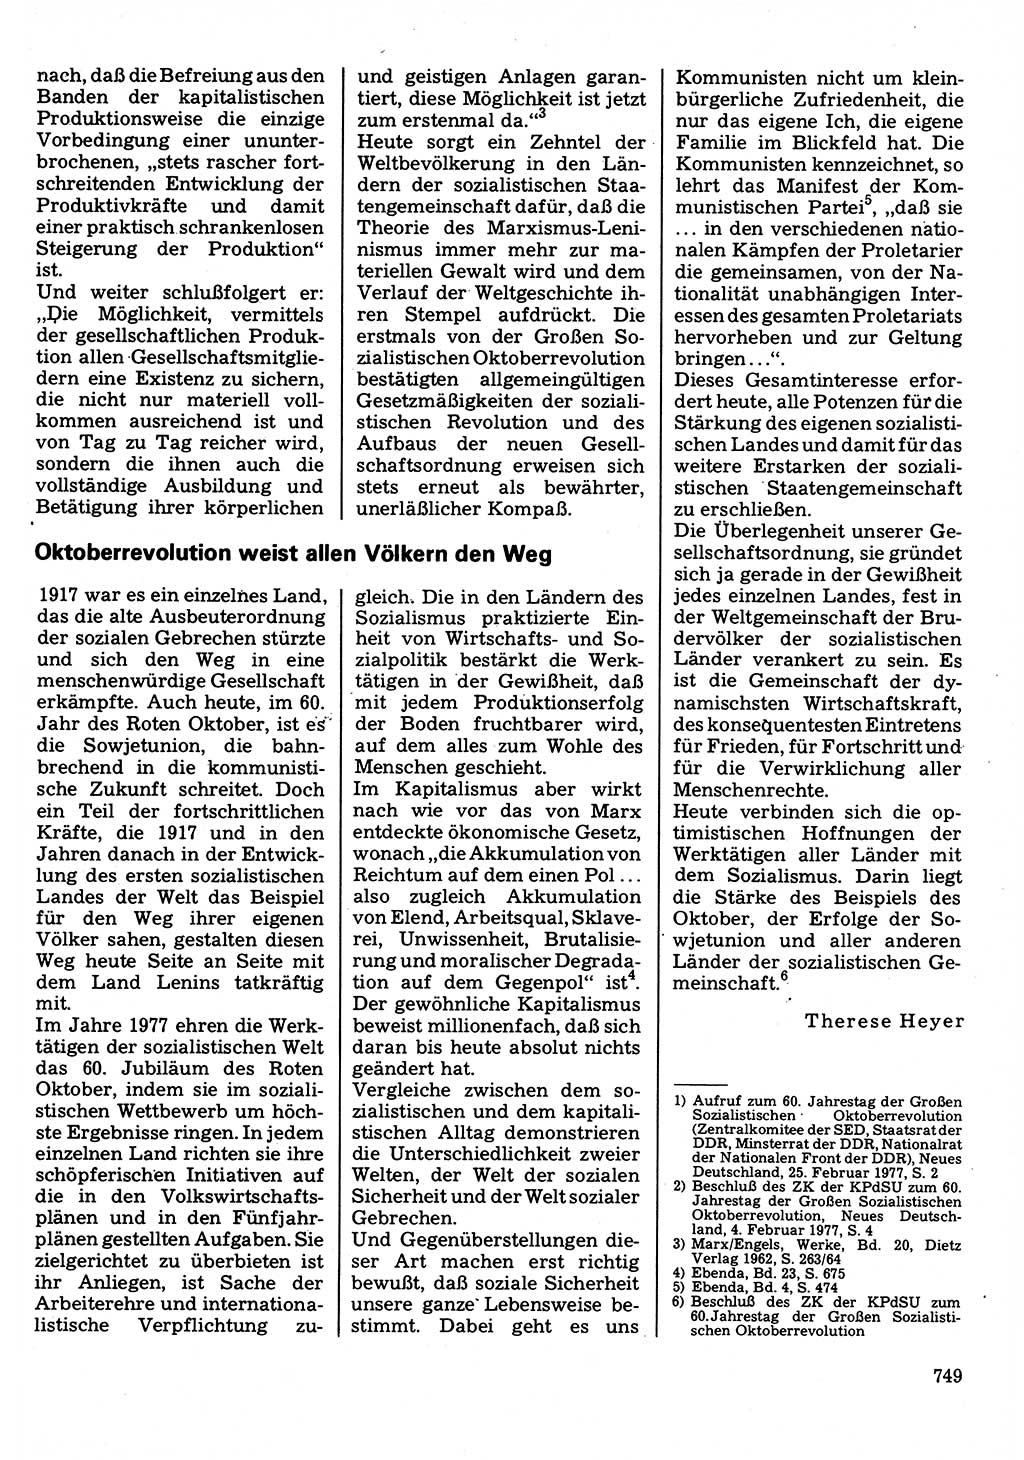 Neuer Weg (NW), Organ des Zentralkomitees (ZK) der SED (Sozialistische Einheitspartei Deutschlands) für Fragen des Parteilebens, 32. Jahrgang [Deutsche Demokratische Republik (DDR)] 1977, Seite 749 (NW ZK SED DDR 1977, S. 749)